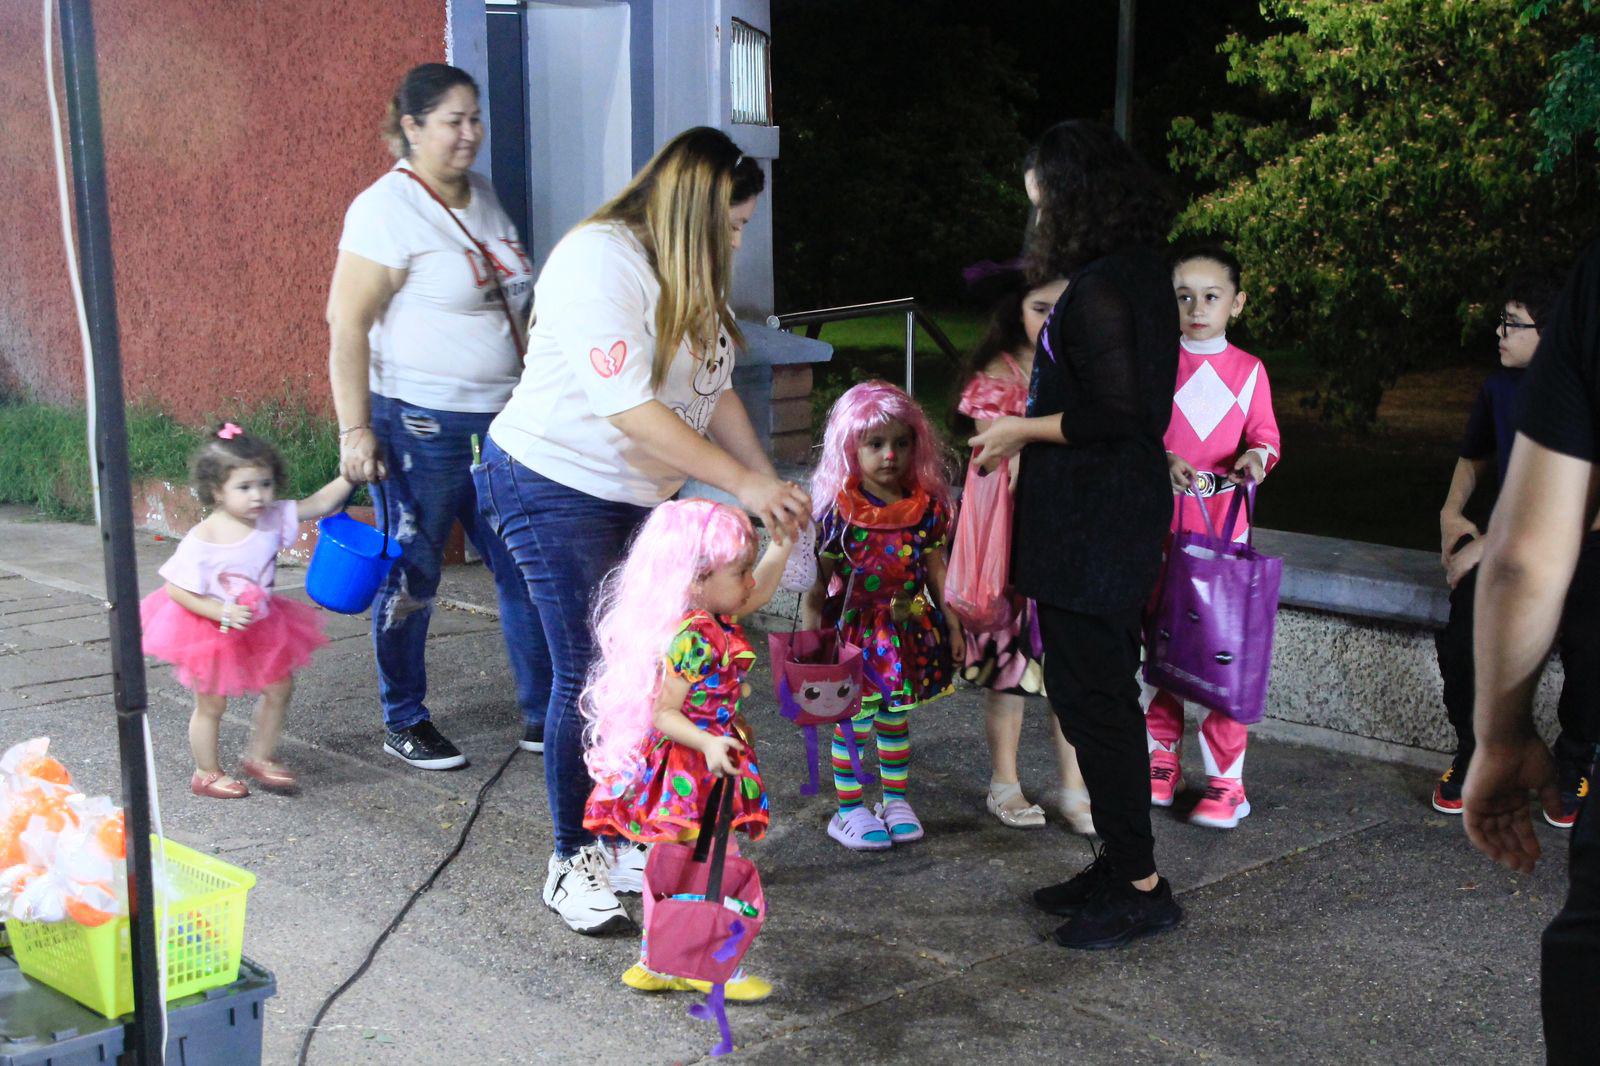 $!#Galería | Salen familias de Culiacán a celebrar la noche de Halloween en avenidas vigiladas